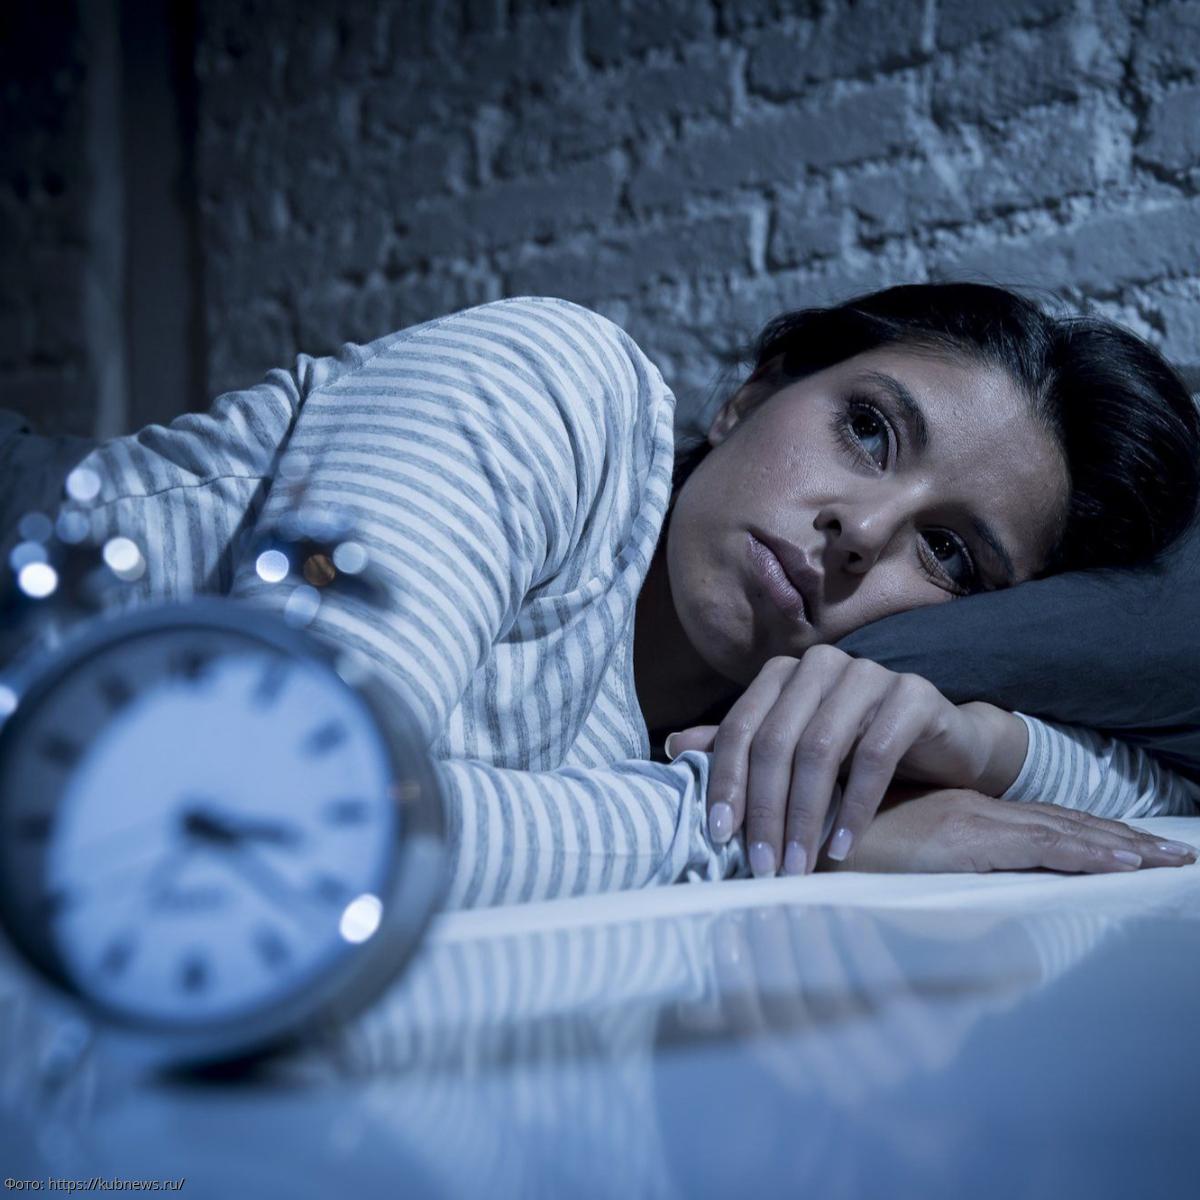 Плохой сон связан с неспособностью сосредоточиться. Новое исследование